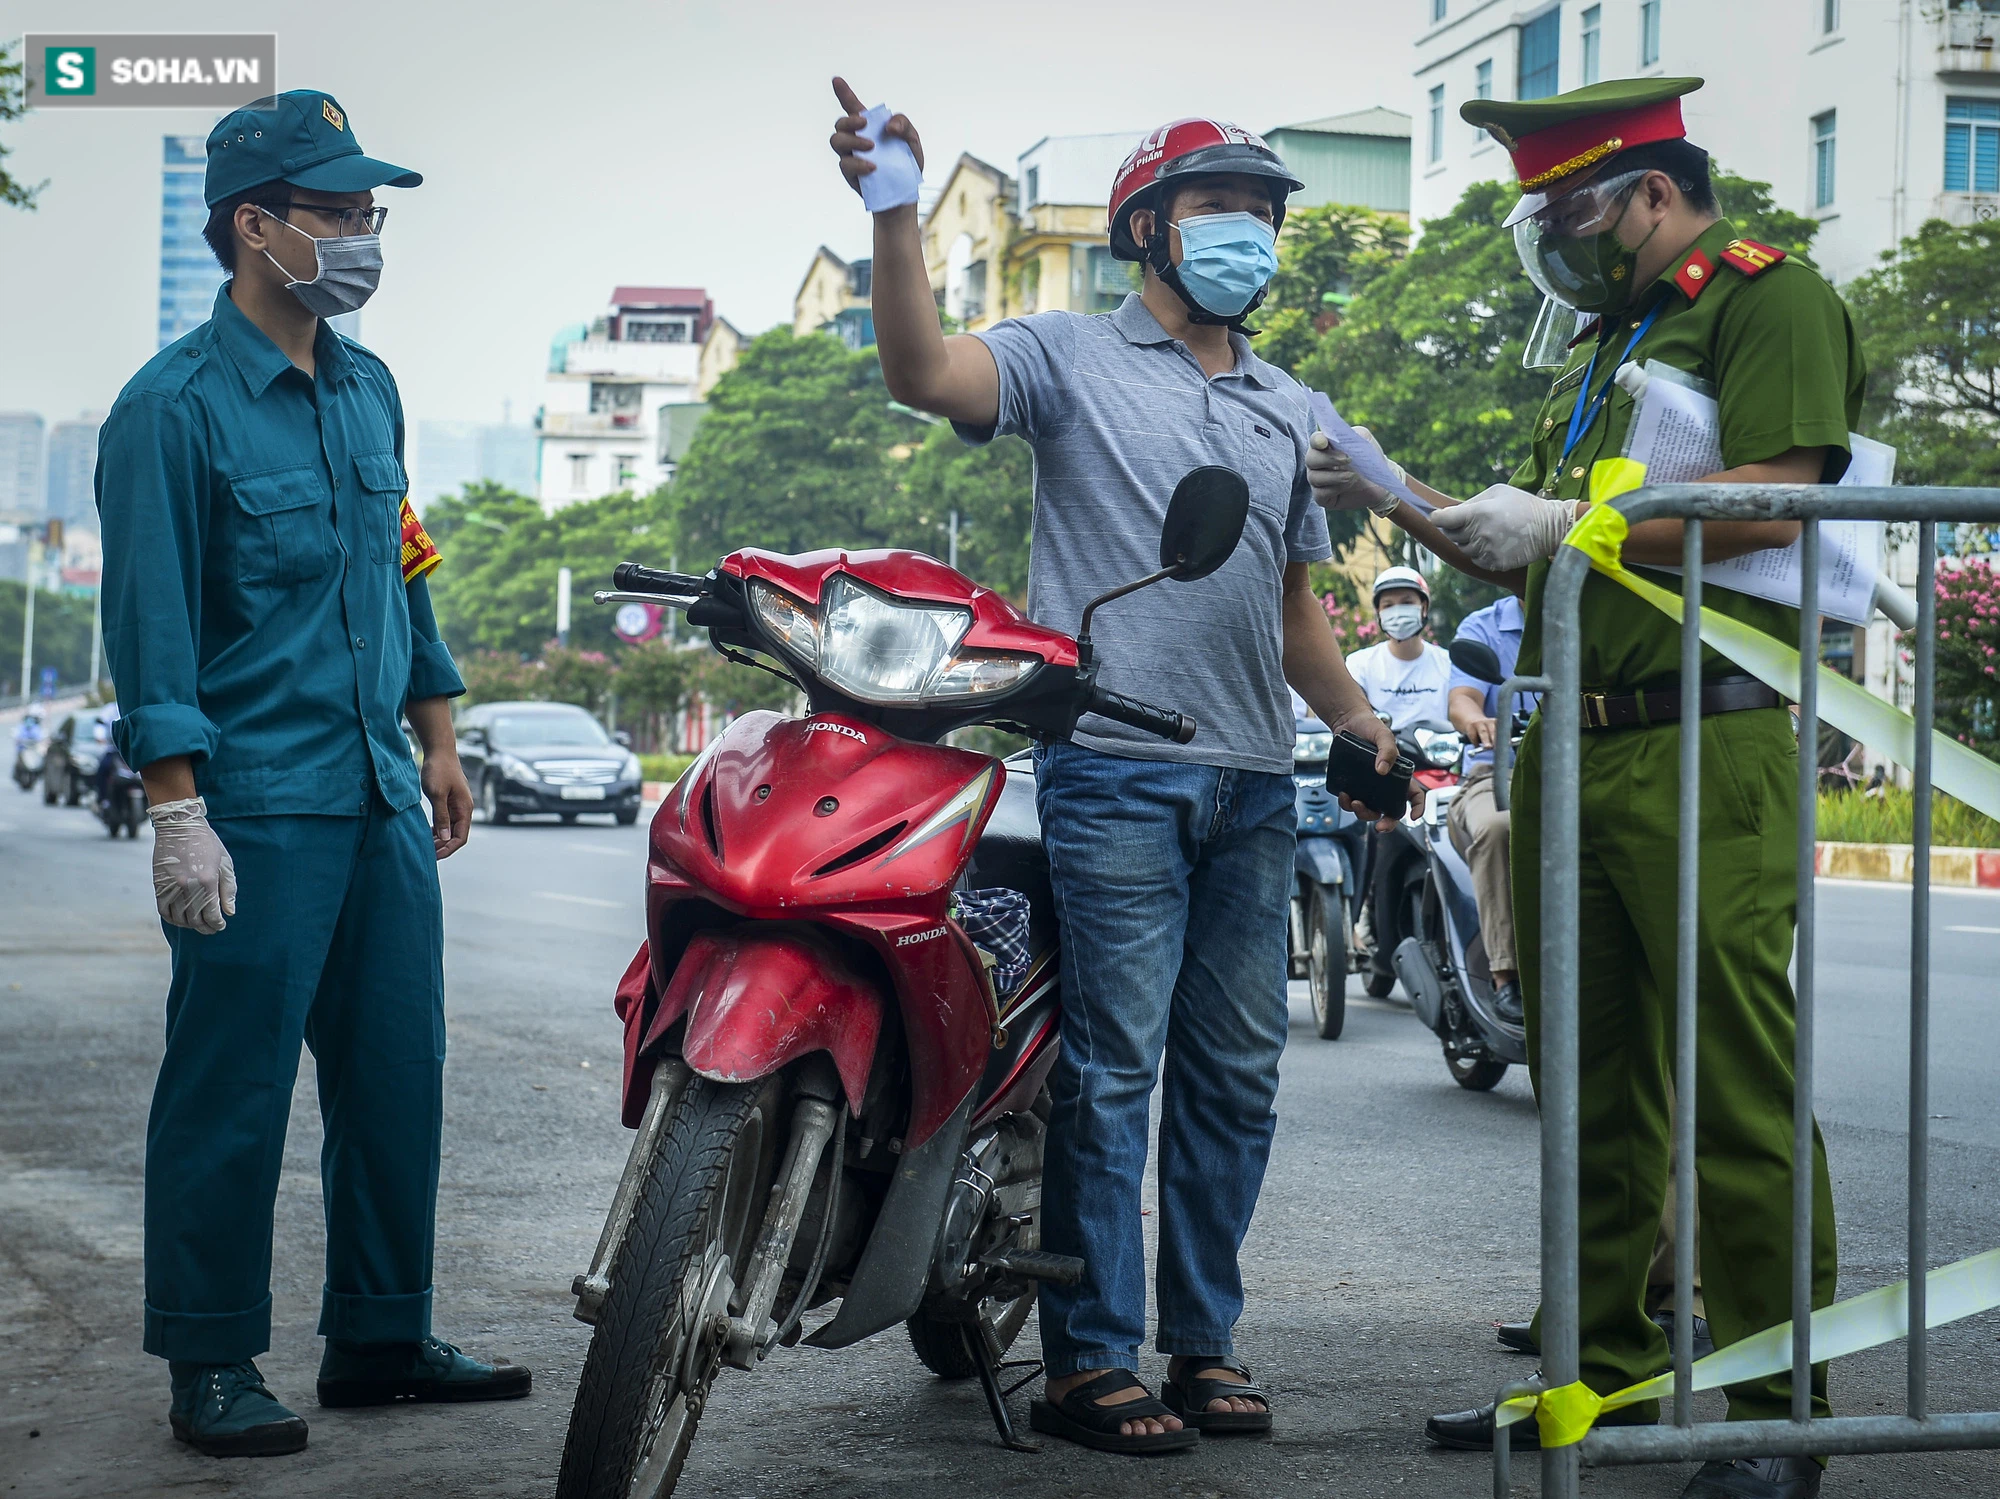 Hà Nội: Hàng loạt người dân bị xử phạt vì thiếu giấy đi đường, một số chốt kiểm soát ùn ứ - Ảnh 4.